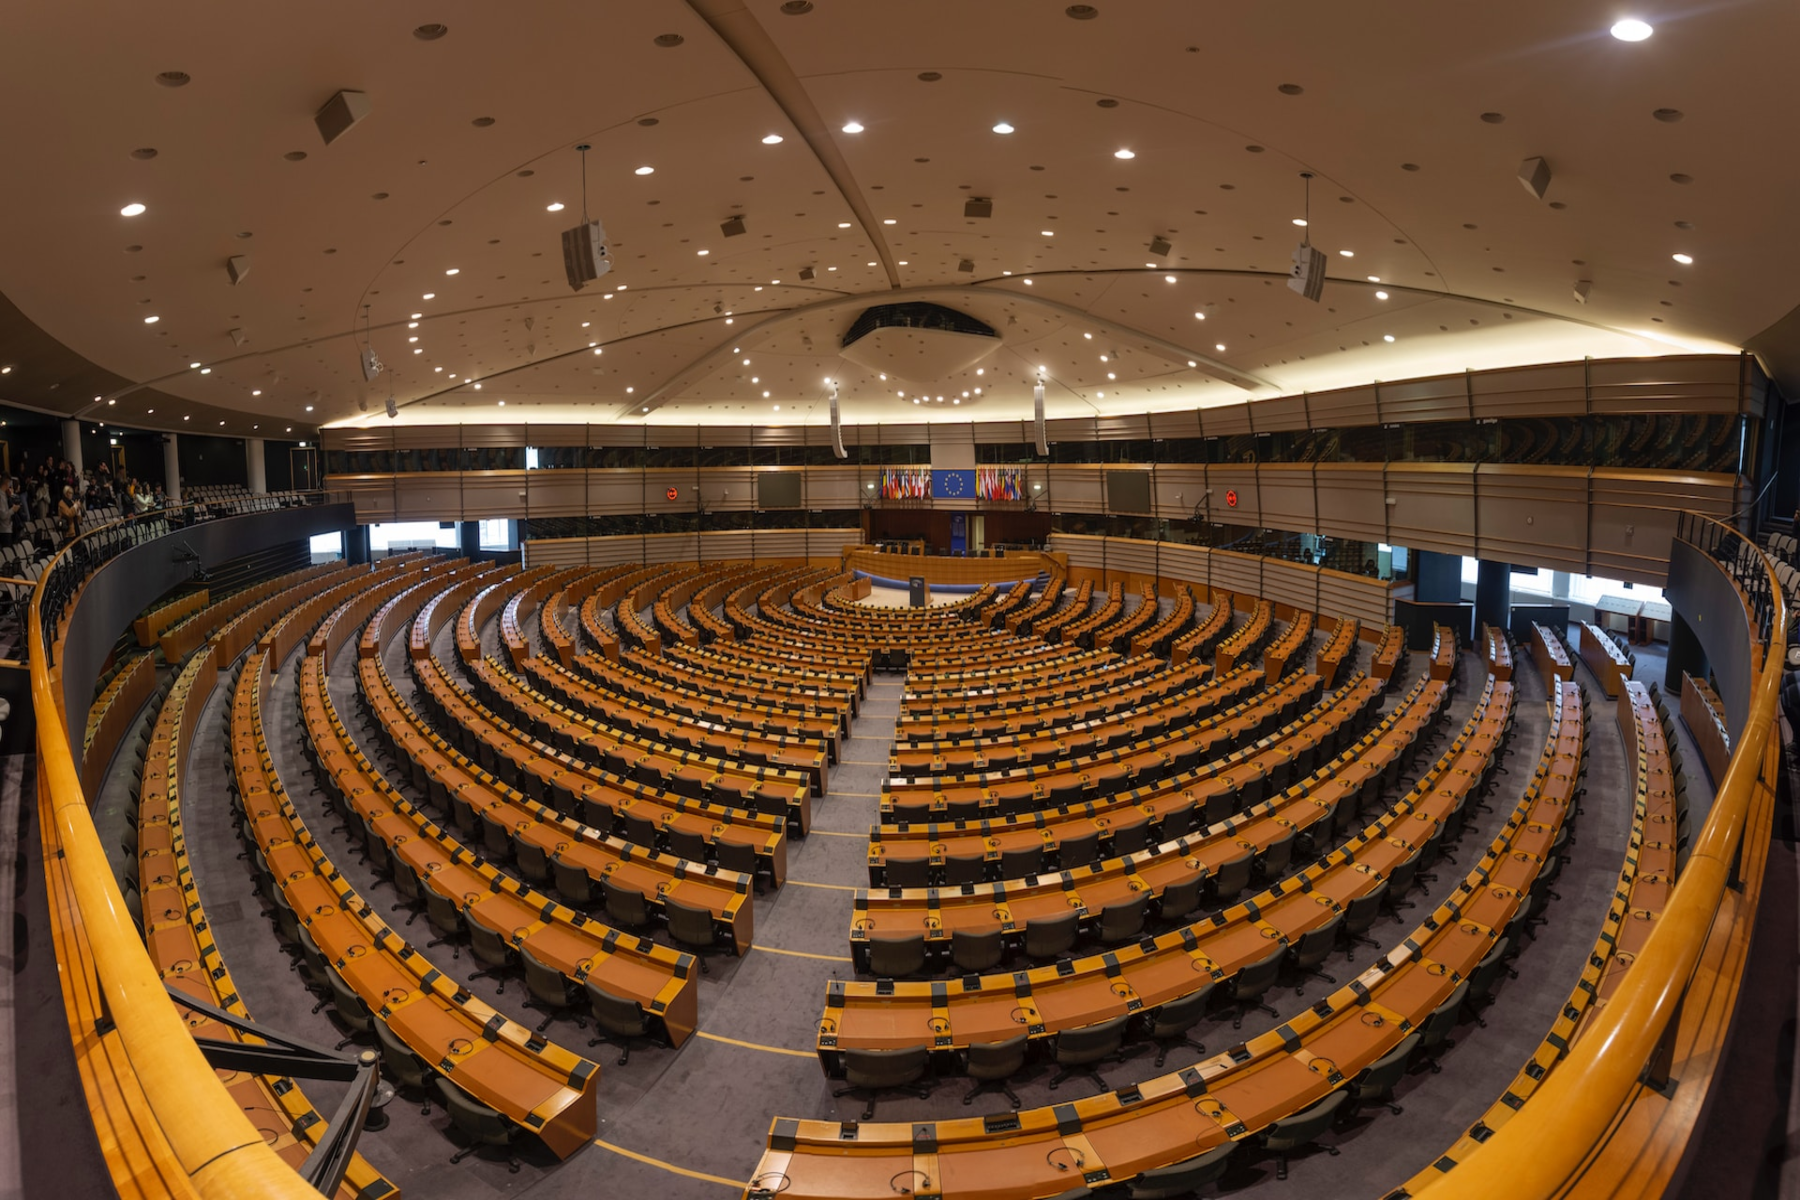 Μικροβιακή αντοχή: Οι εθνικές στρατηγικές είναι βασικές, λέει το Ευρωπαϊκό Κοινοβούλιο